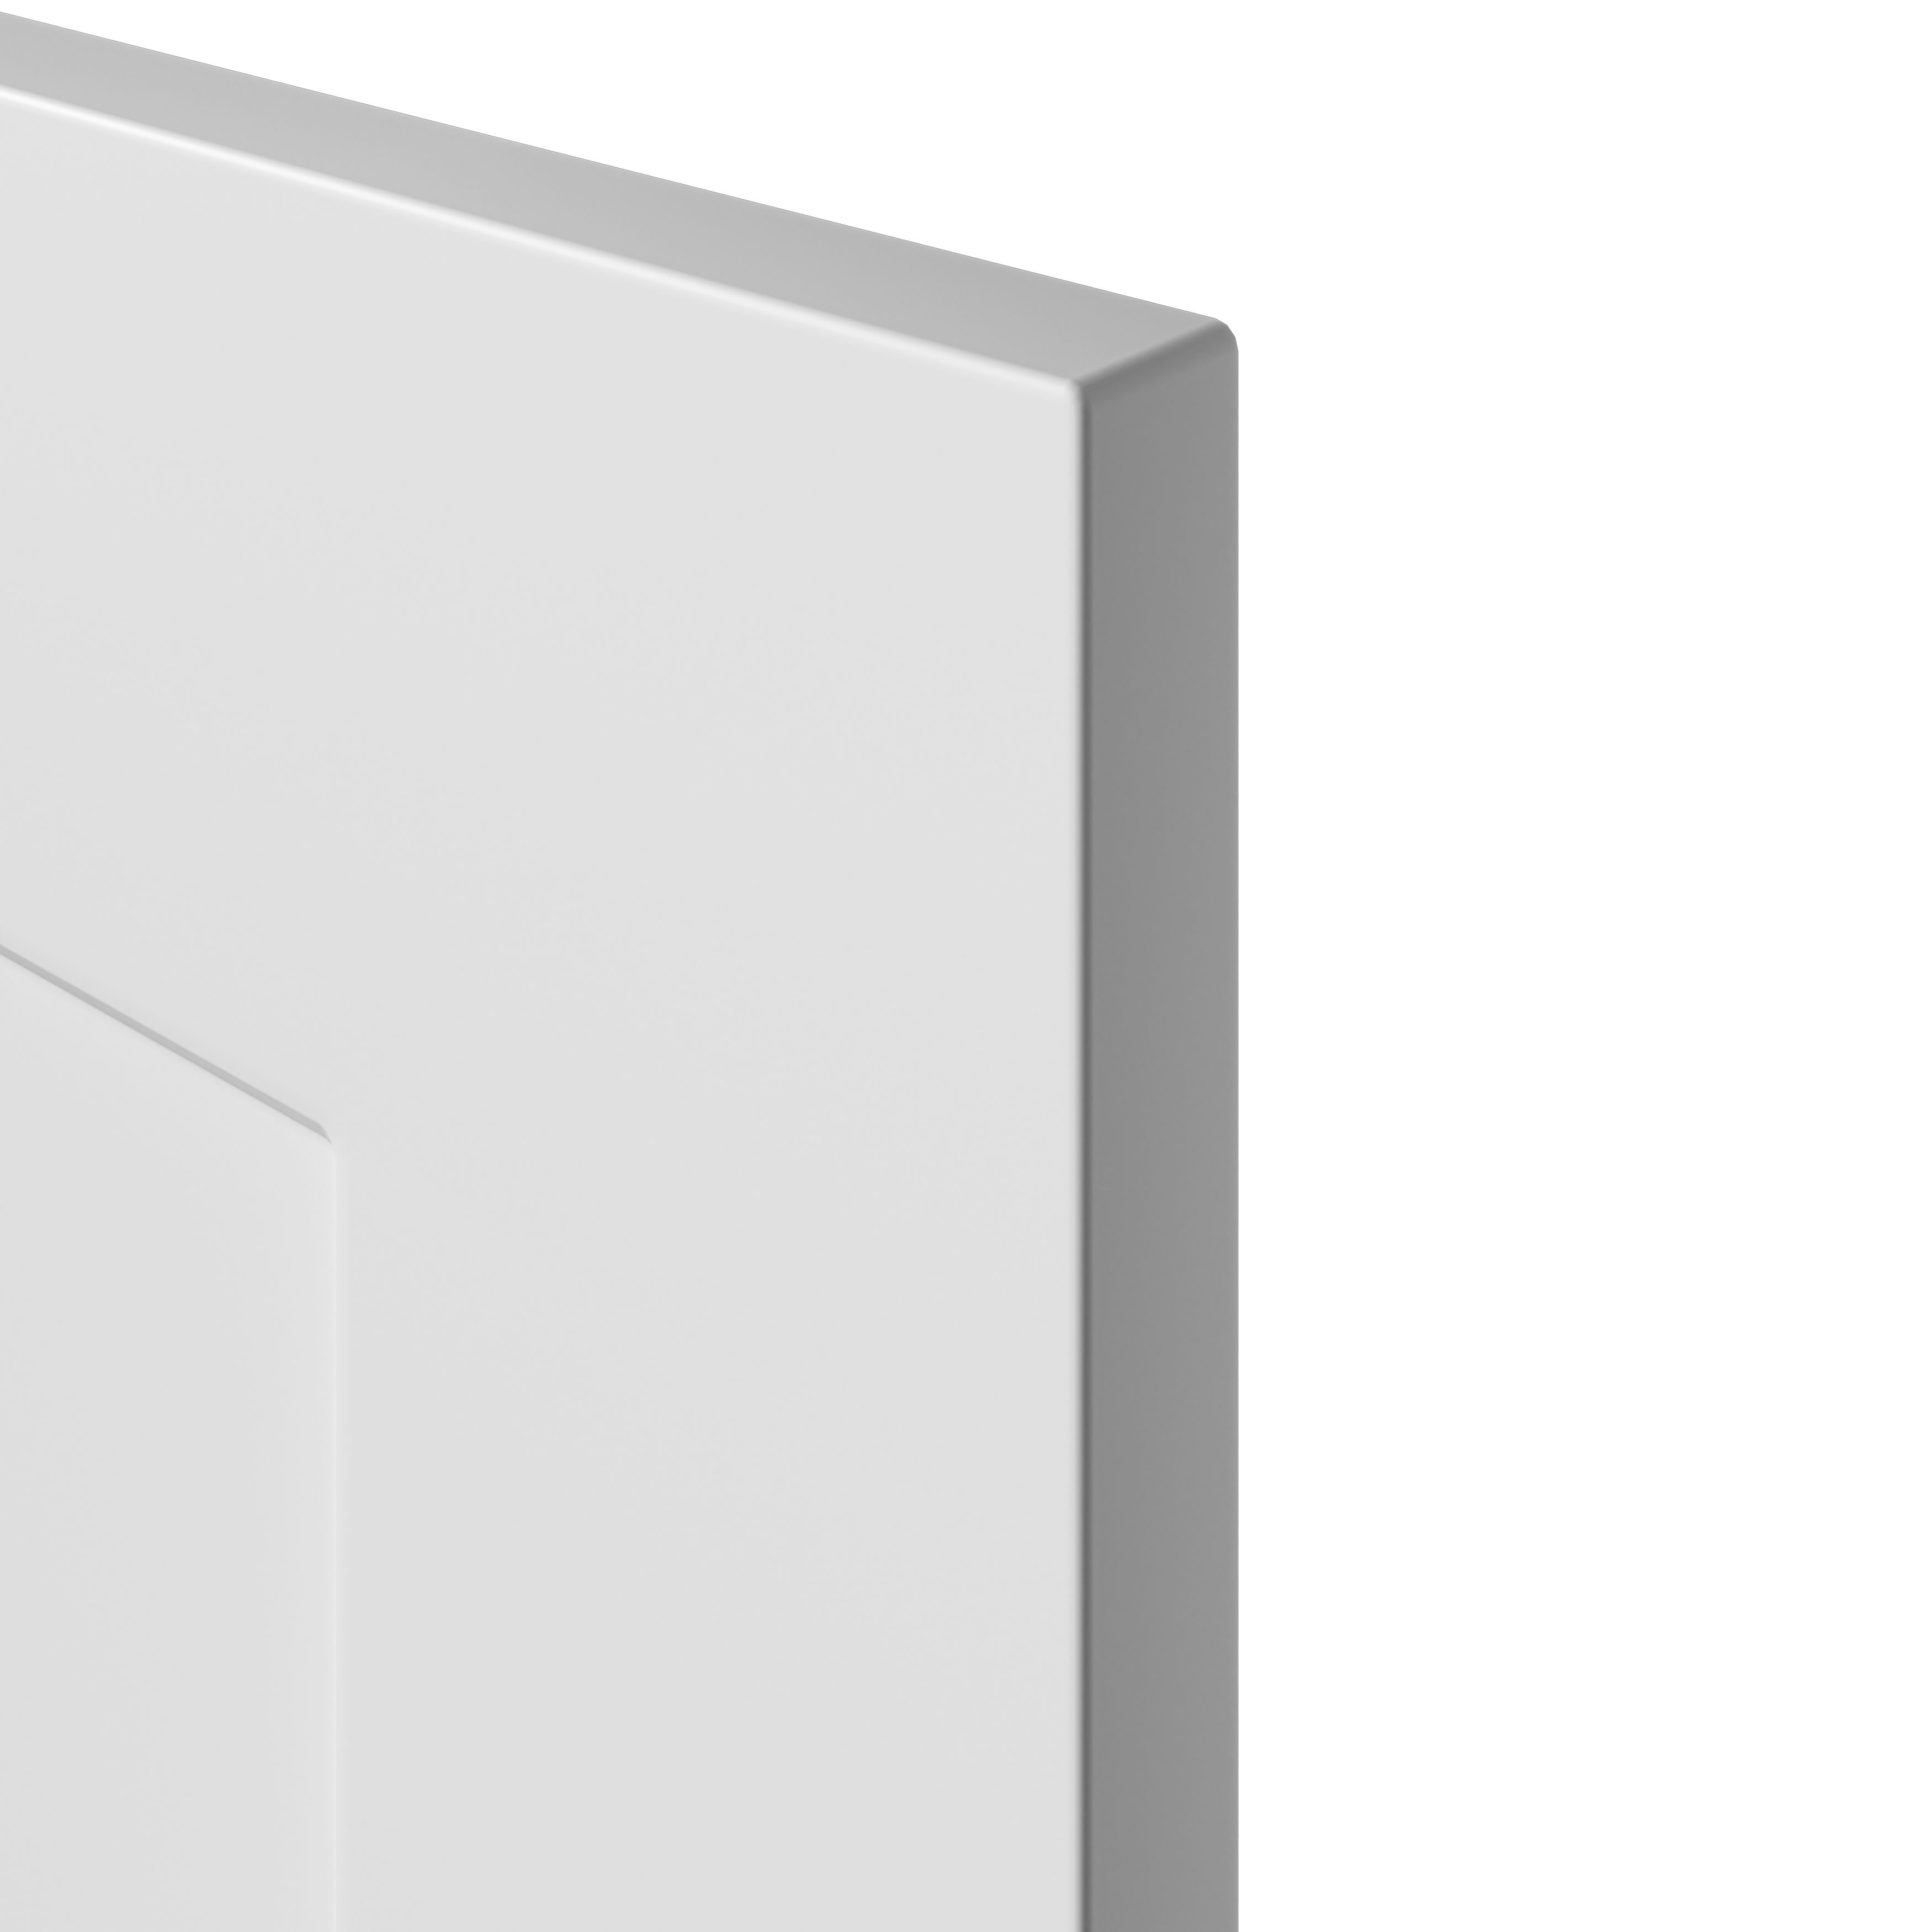 GoodHome Artemisia Matt white Drawer front, bridging door & bi fold door, (W)600mm (H)340mm (T)18mm